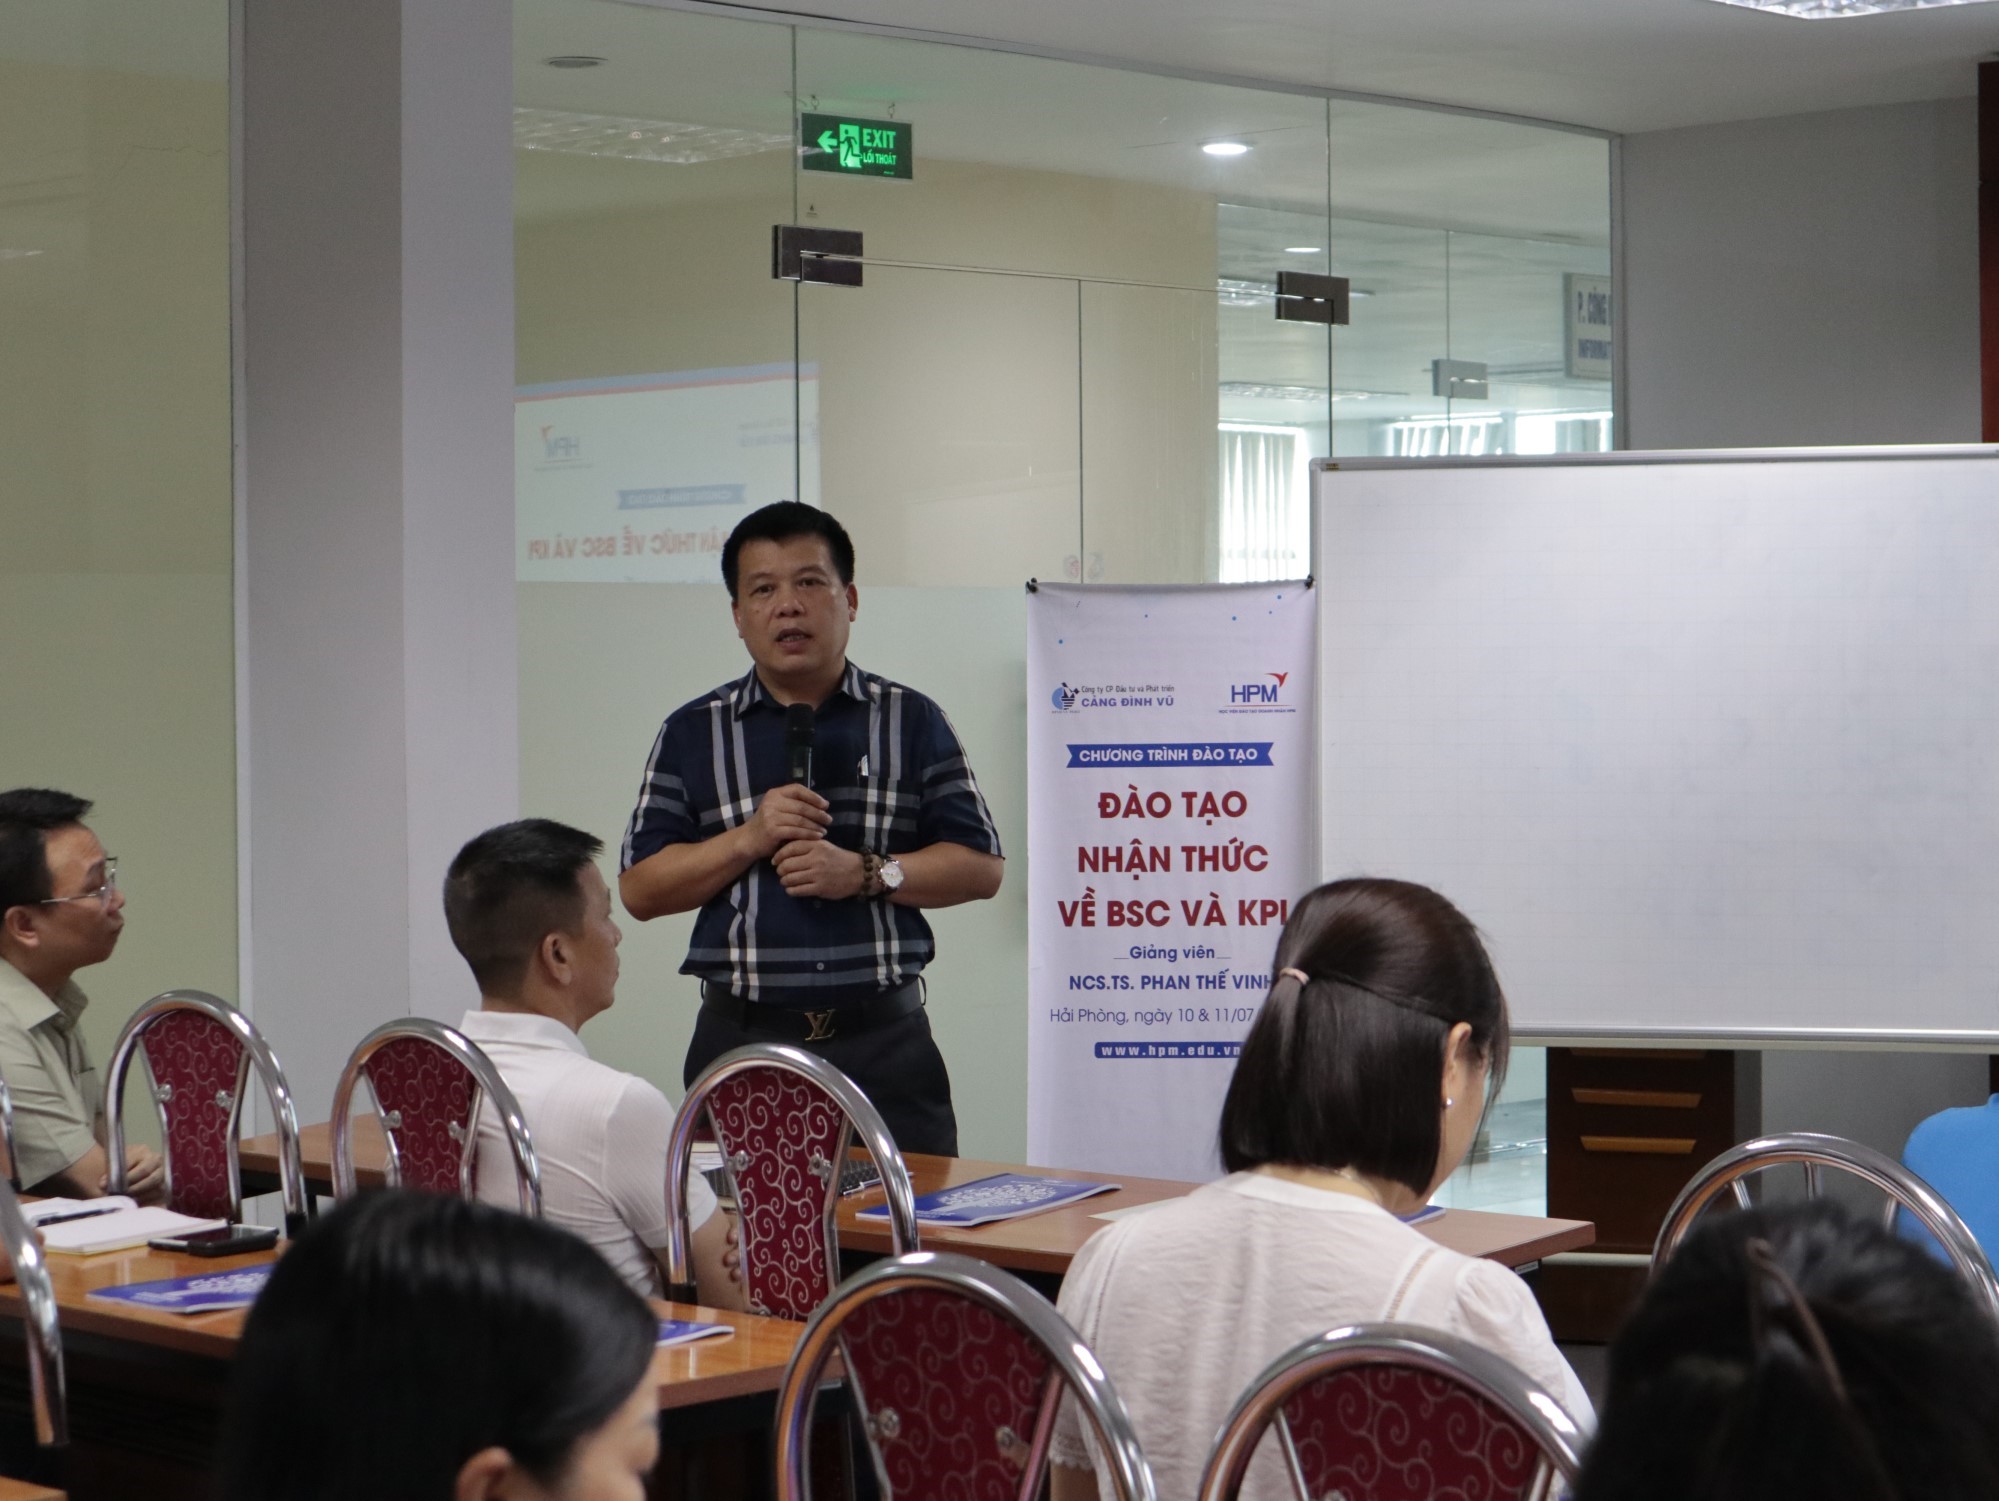 Tổng Giám đốc Cao Văn Tĩnh tham dự và phát biểu tại chương trình đào tạo